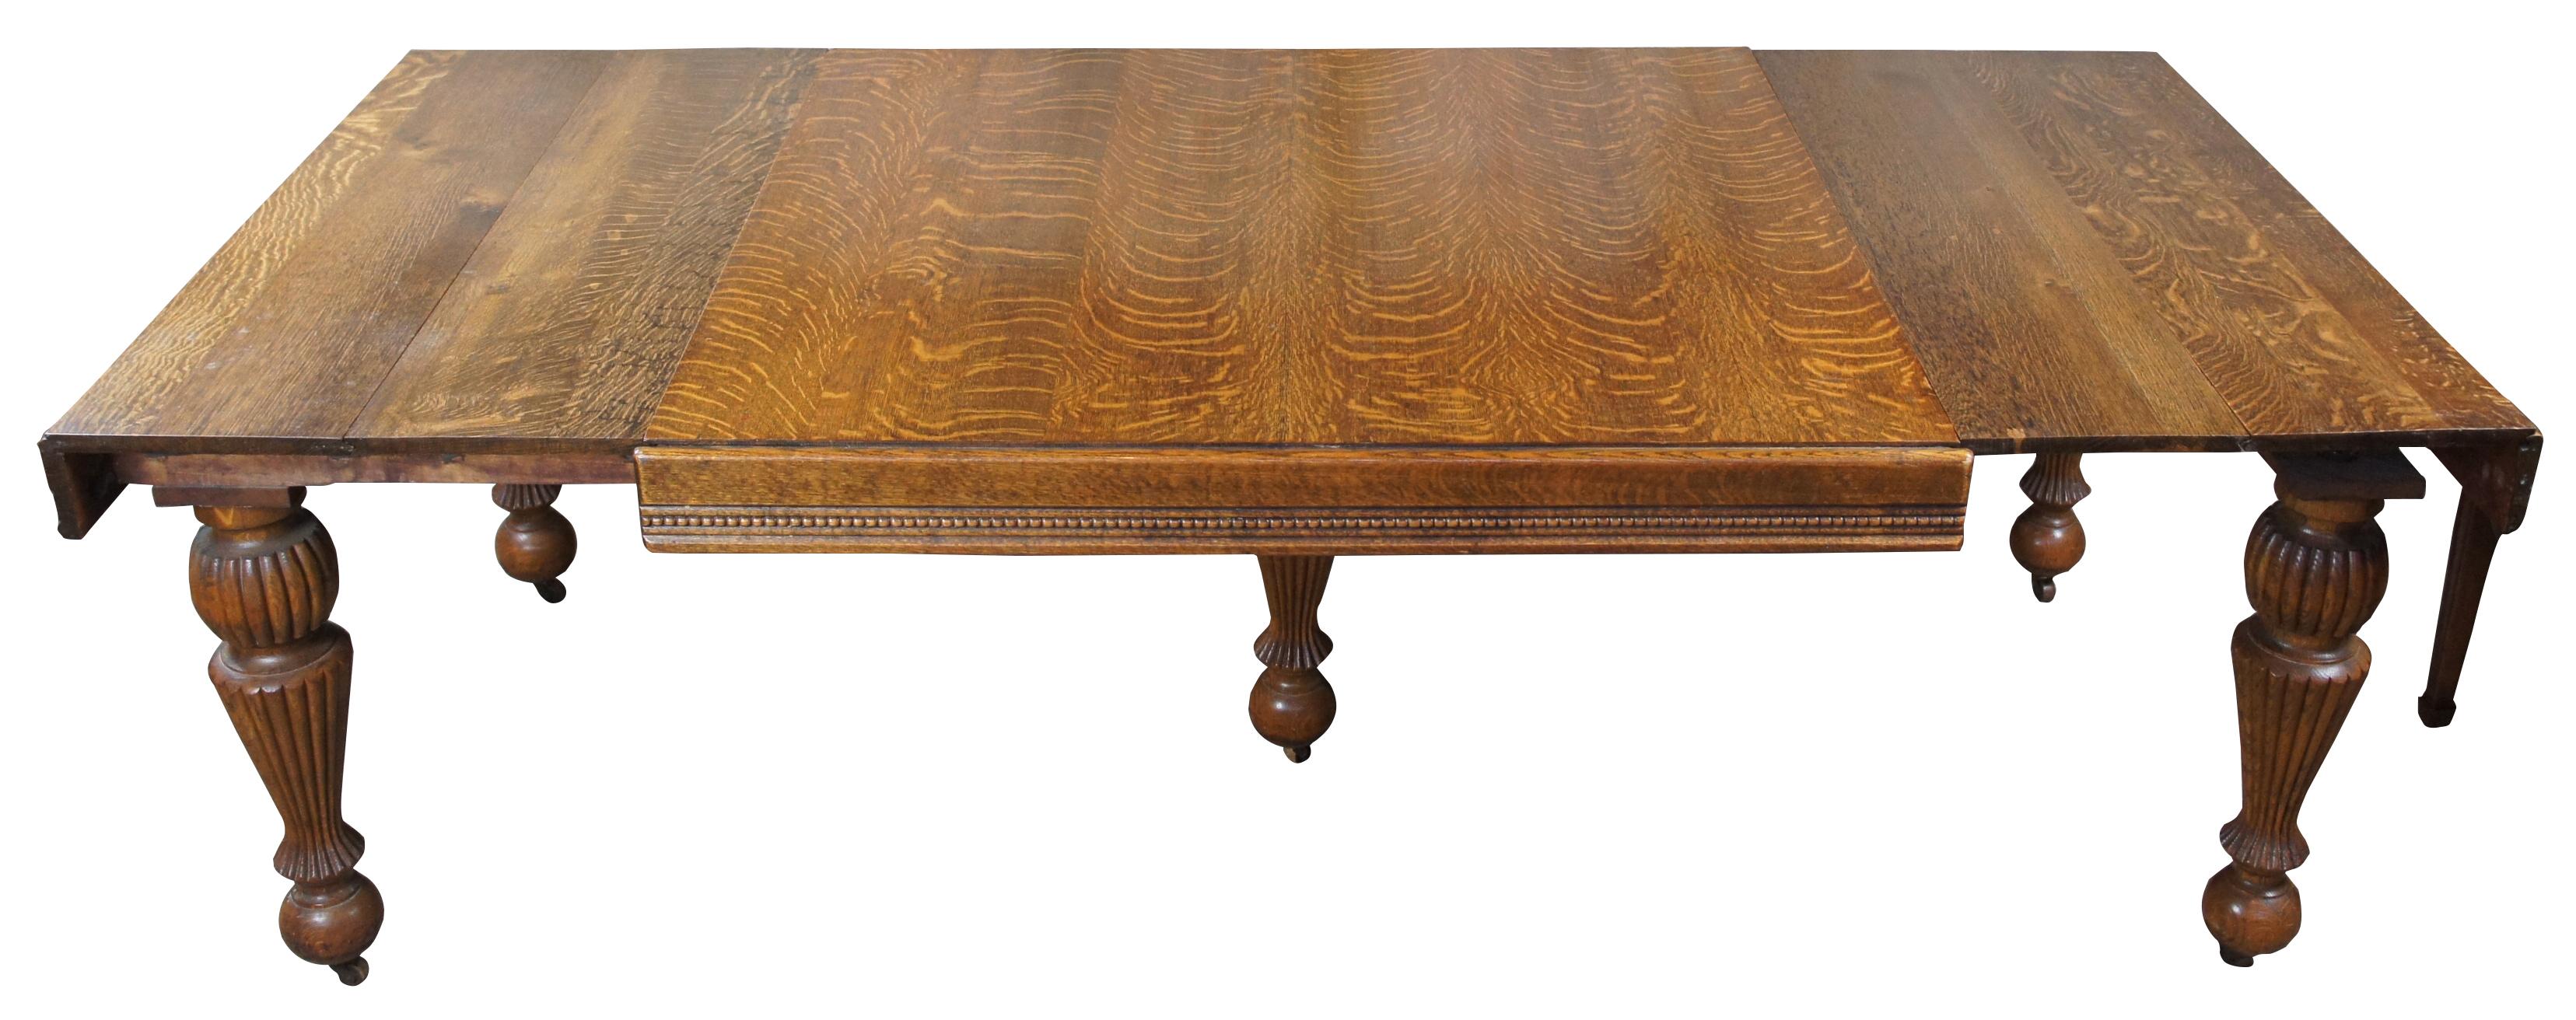 antique square oak table